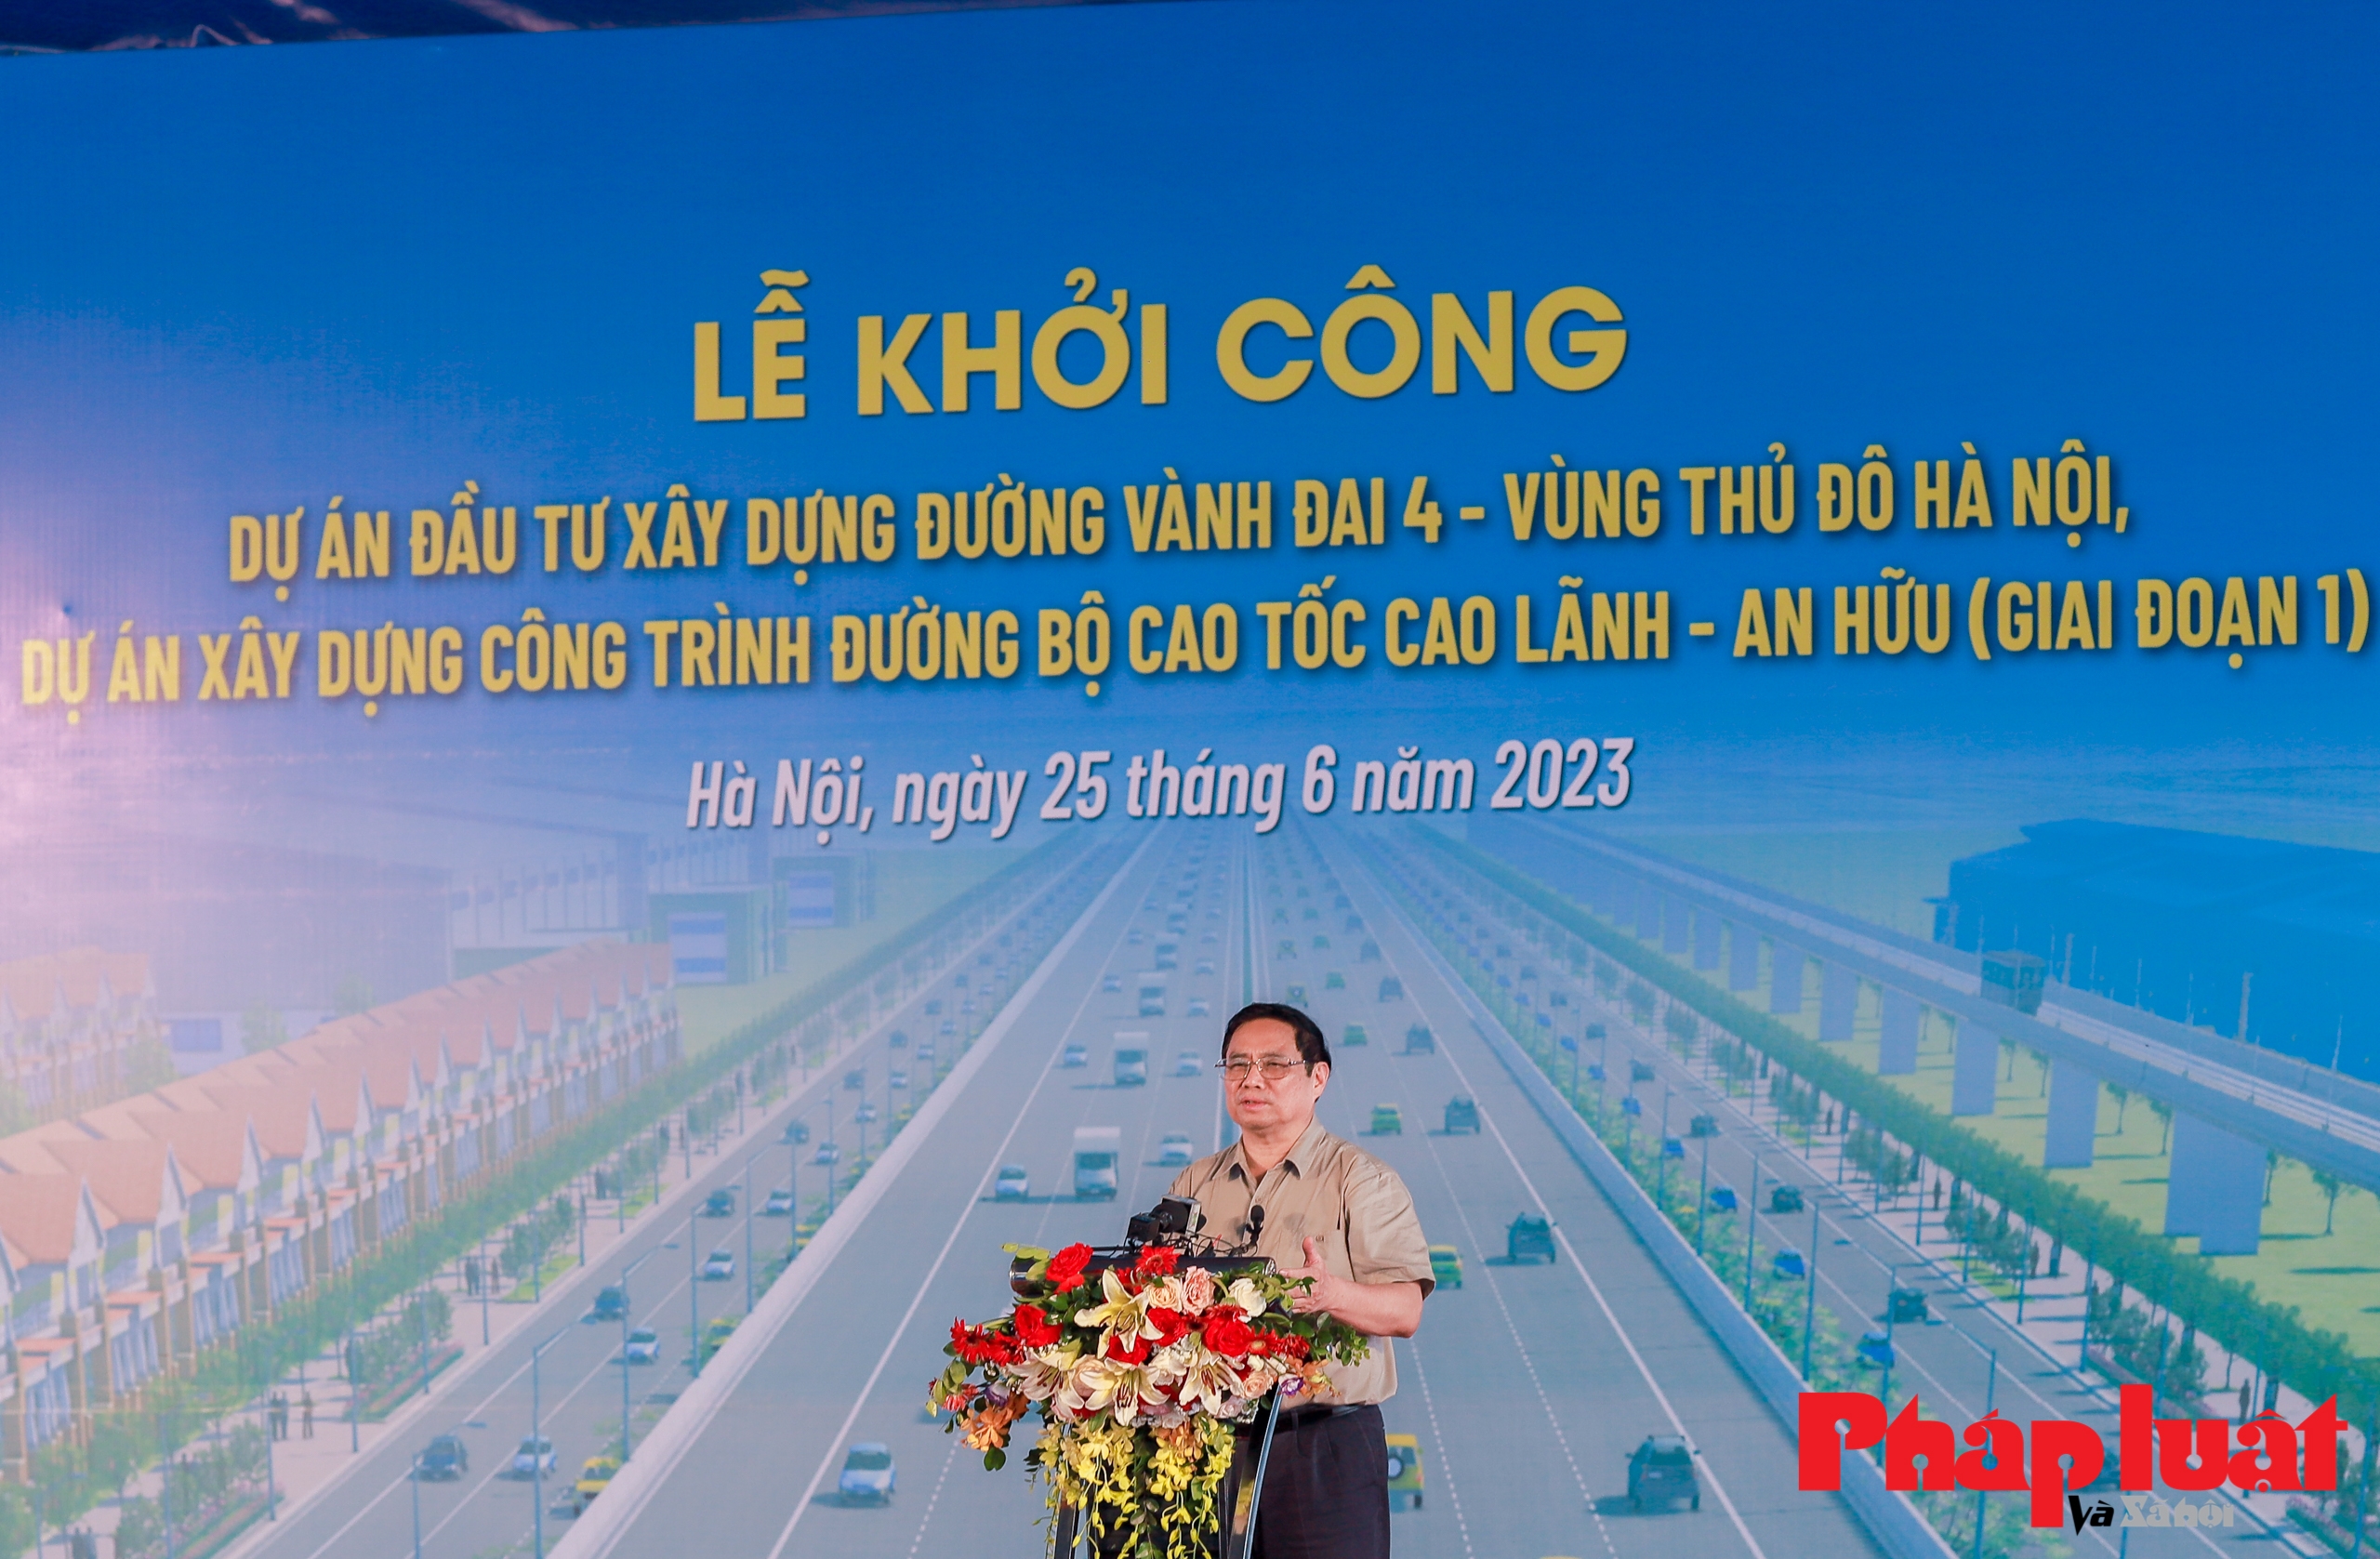 Toàn cảnh lễ khởi công Dự án đầu tư xây dựng đường Vành đai 4 - Vùng Thủ đô Hà Nội